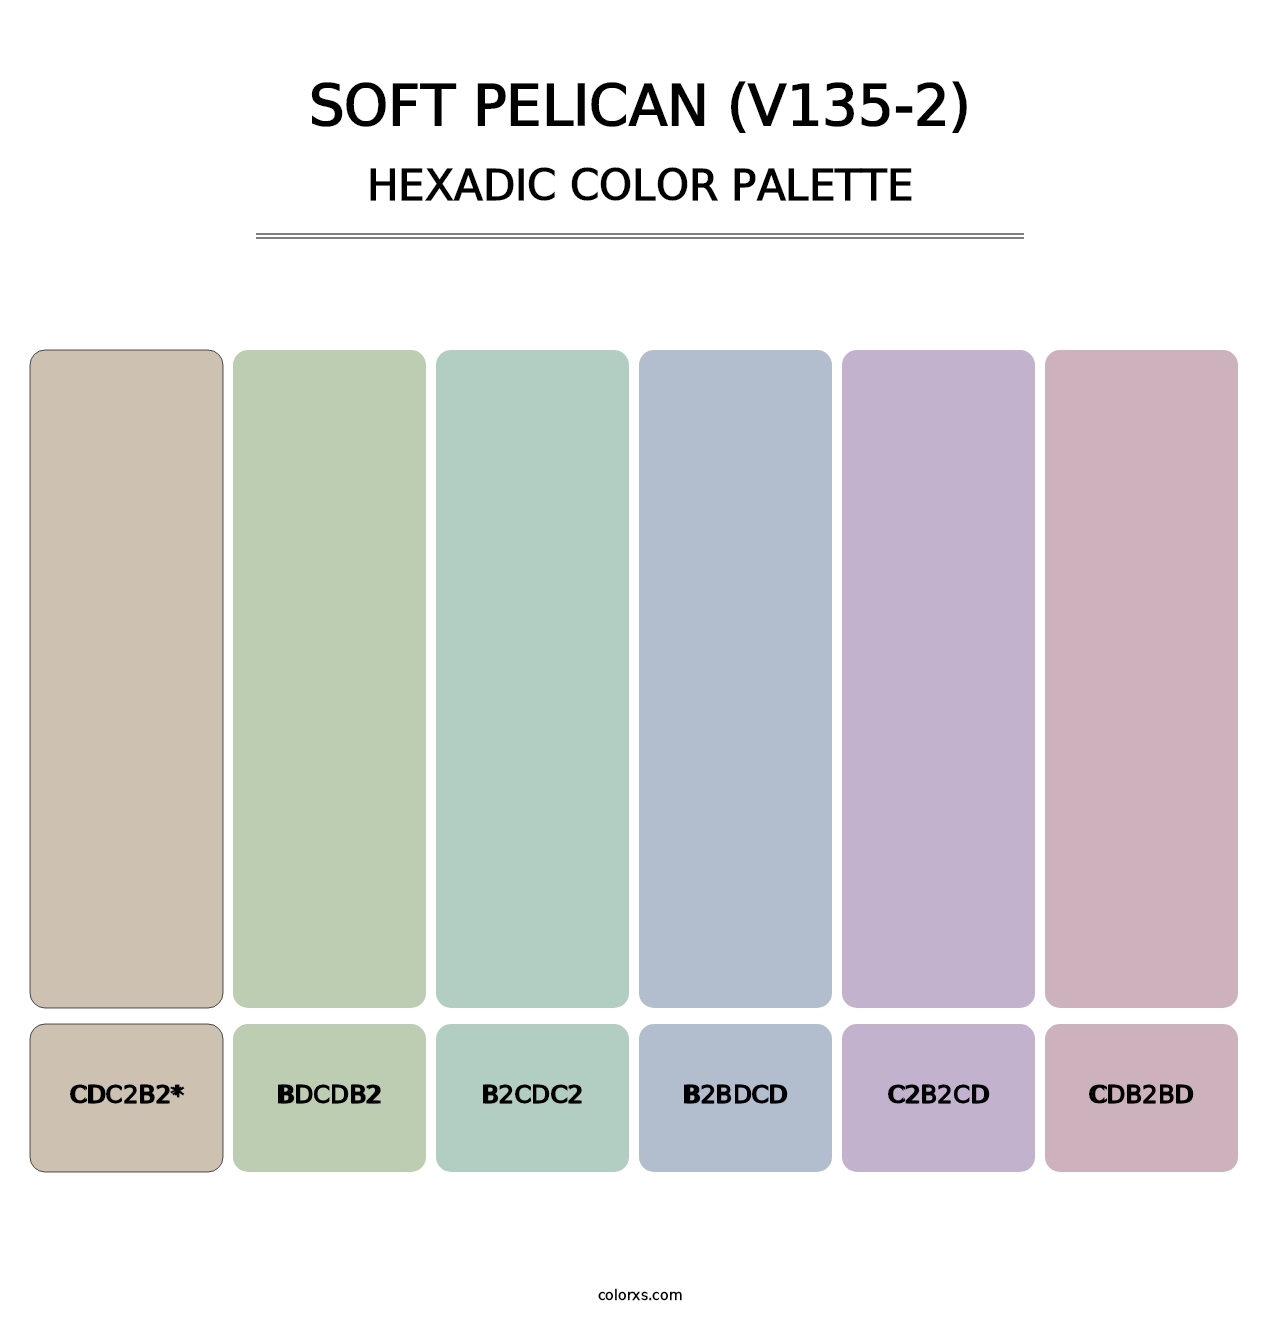 Soft Pelican (V135-2) - Hexadic Color Palette